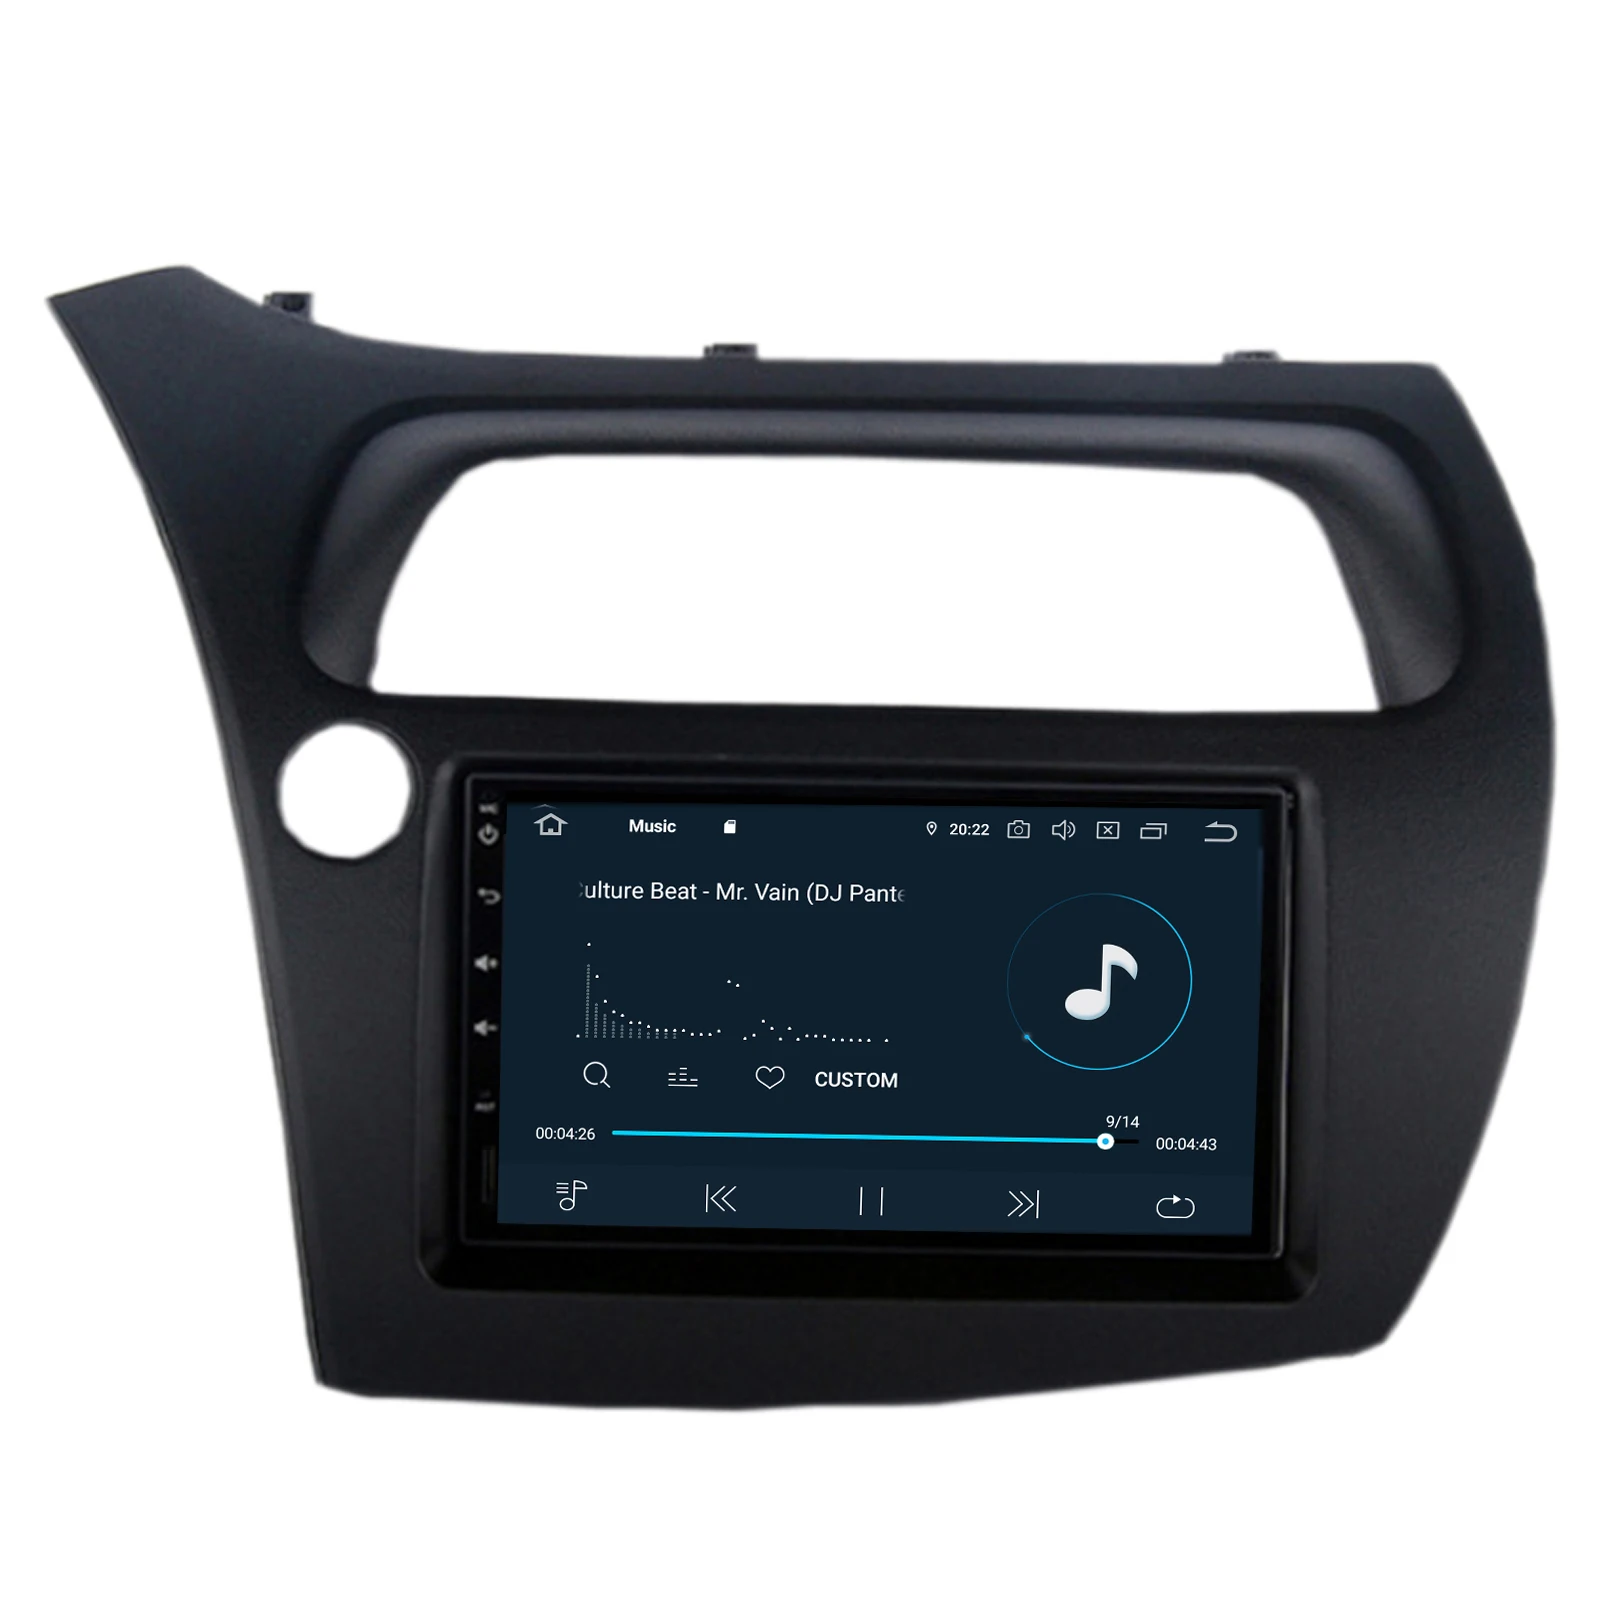 HFCYJIA " PX6 Android 9,0 система автомобильный радиоприемник для Honda Civic 4+ 64G ram gps навигационная система, стереомагнитола wifi OBD DVR зеркальный телефон Google